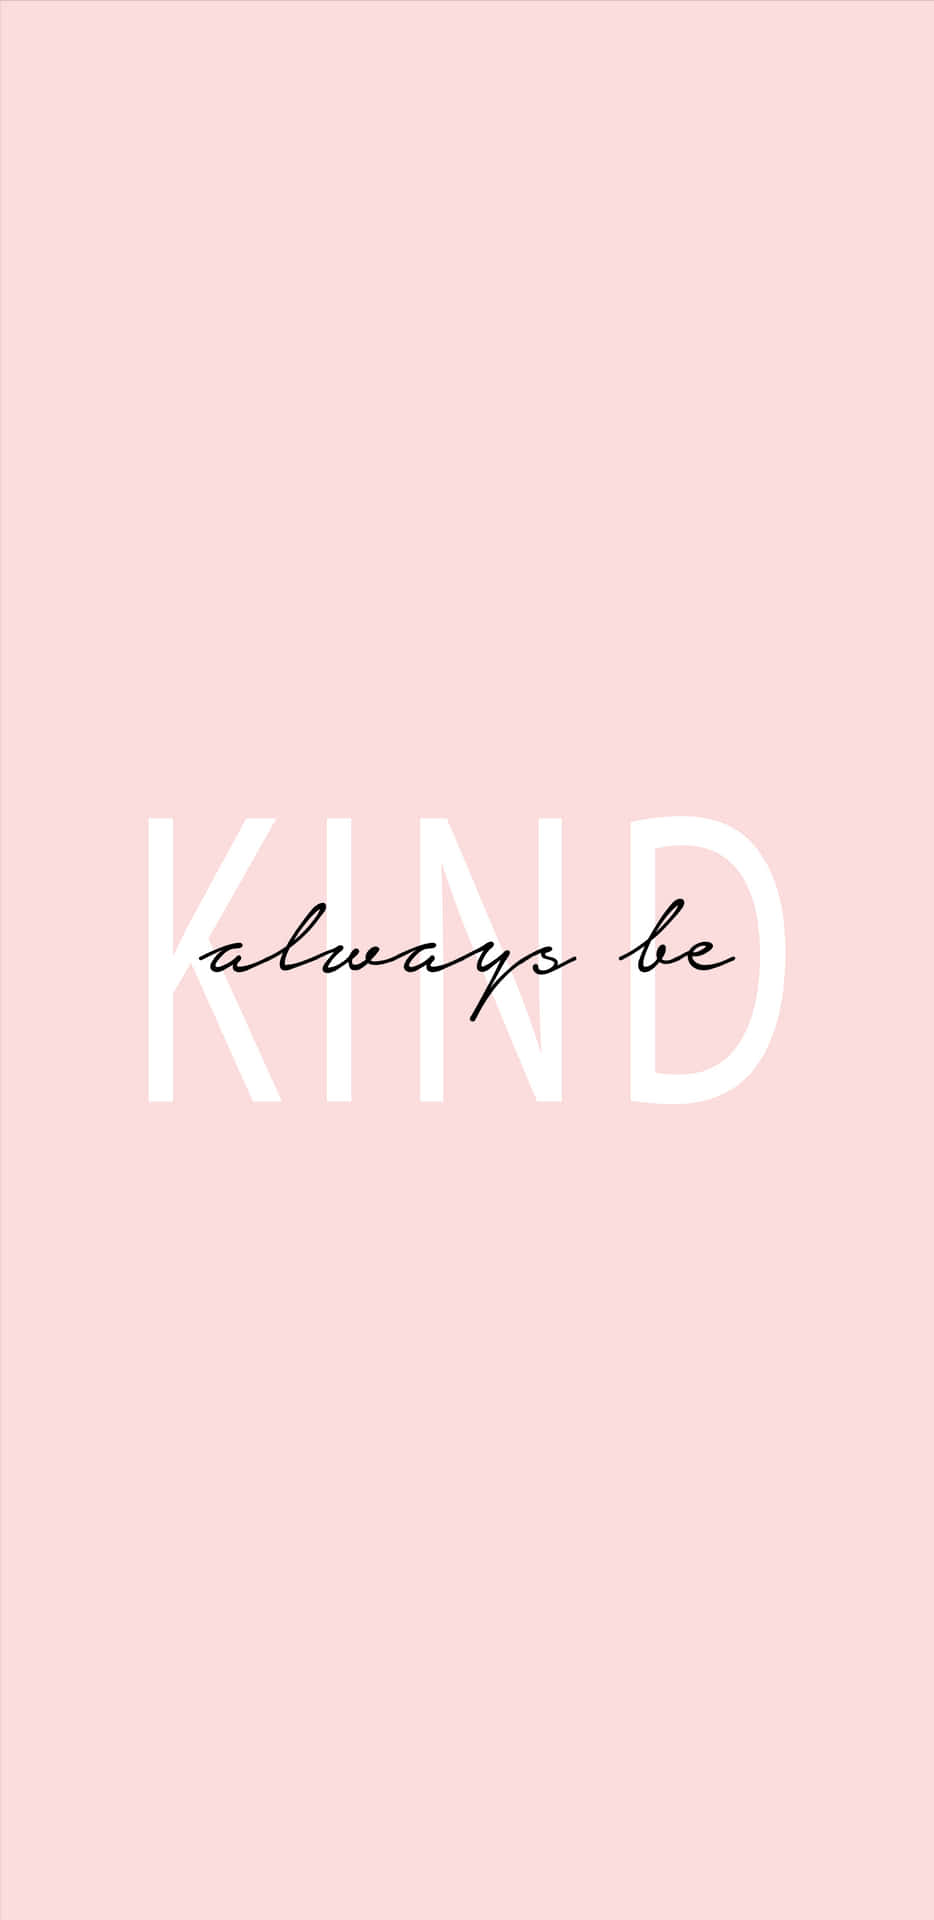 Inspirational Reminder - "Always Be Kind" Wallpaper